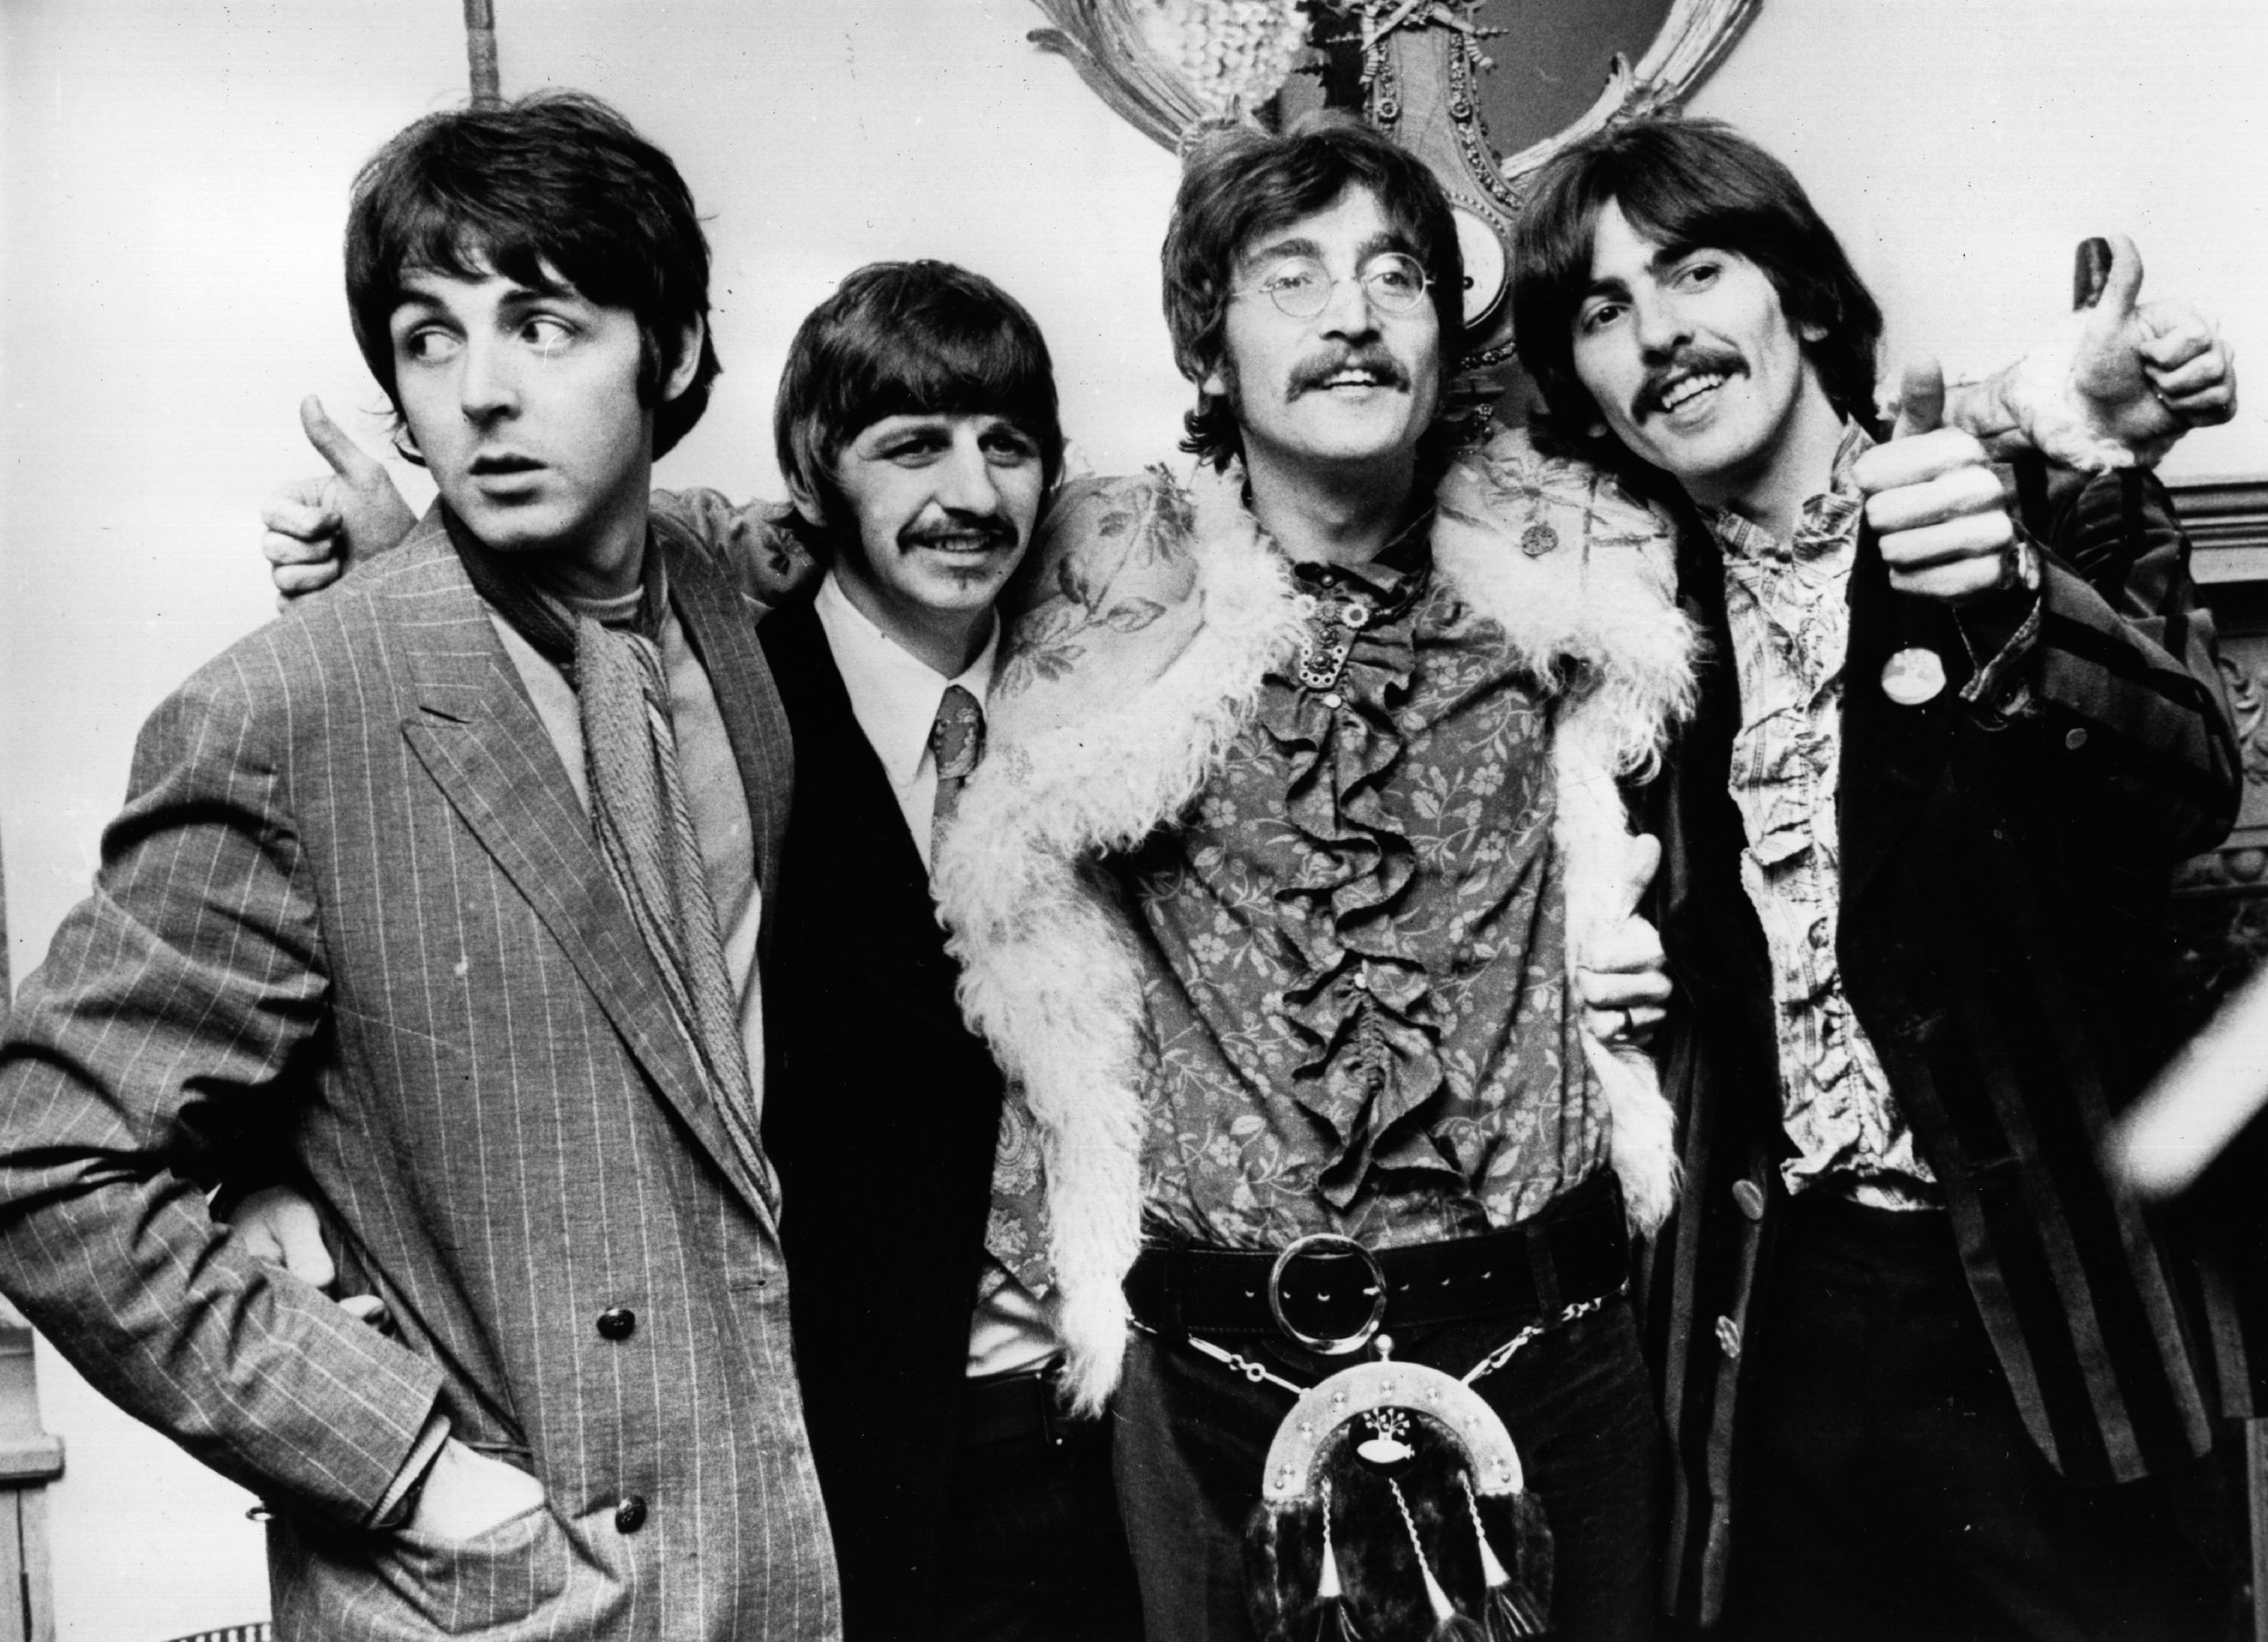 Paul McCartney, Ringo Starr, John Lennon, and George Harrison in black-and-white during The Beatles' "Blackbird" era 